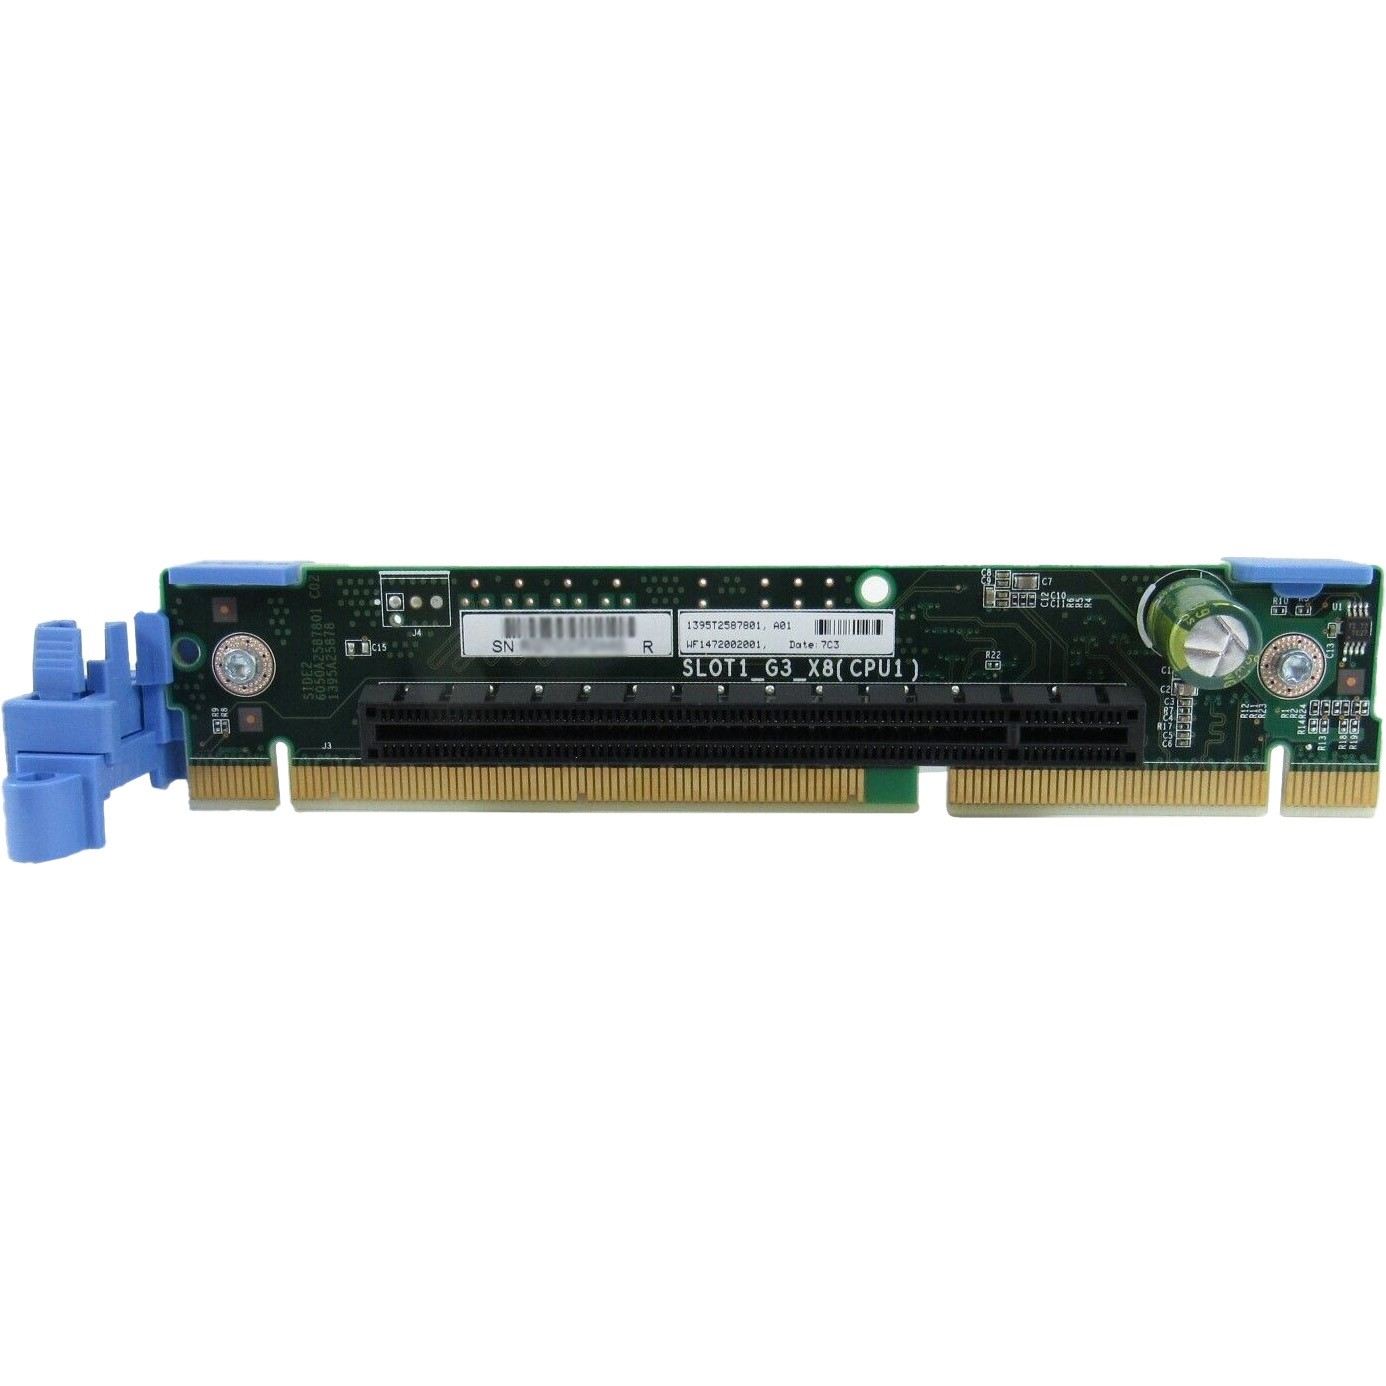 Dell PowerEdge R630 Riser 2 PCIe-x16 Riser Board CPU1